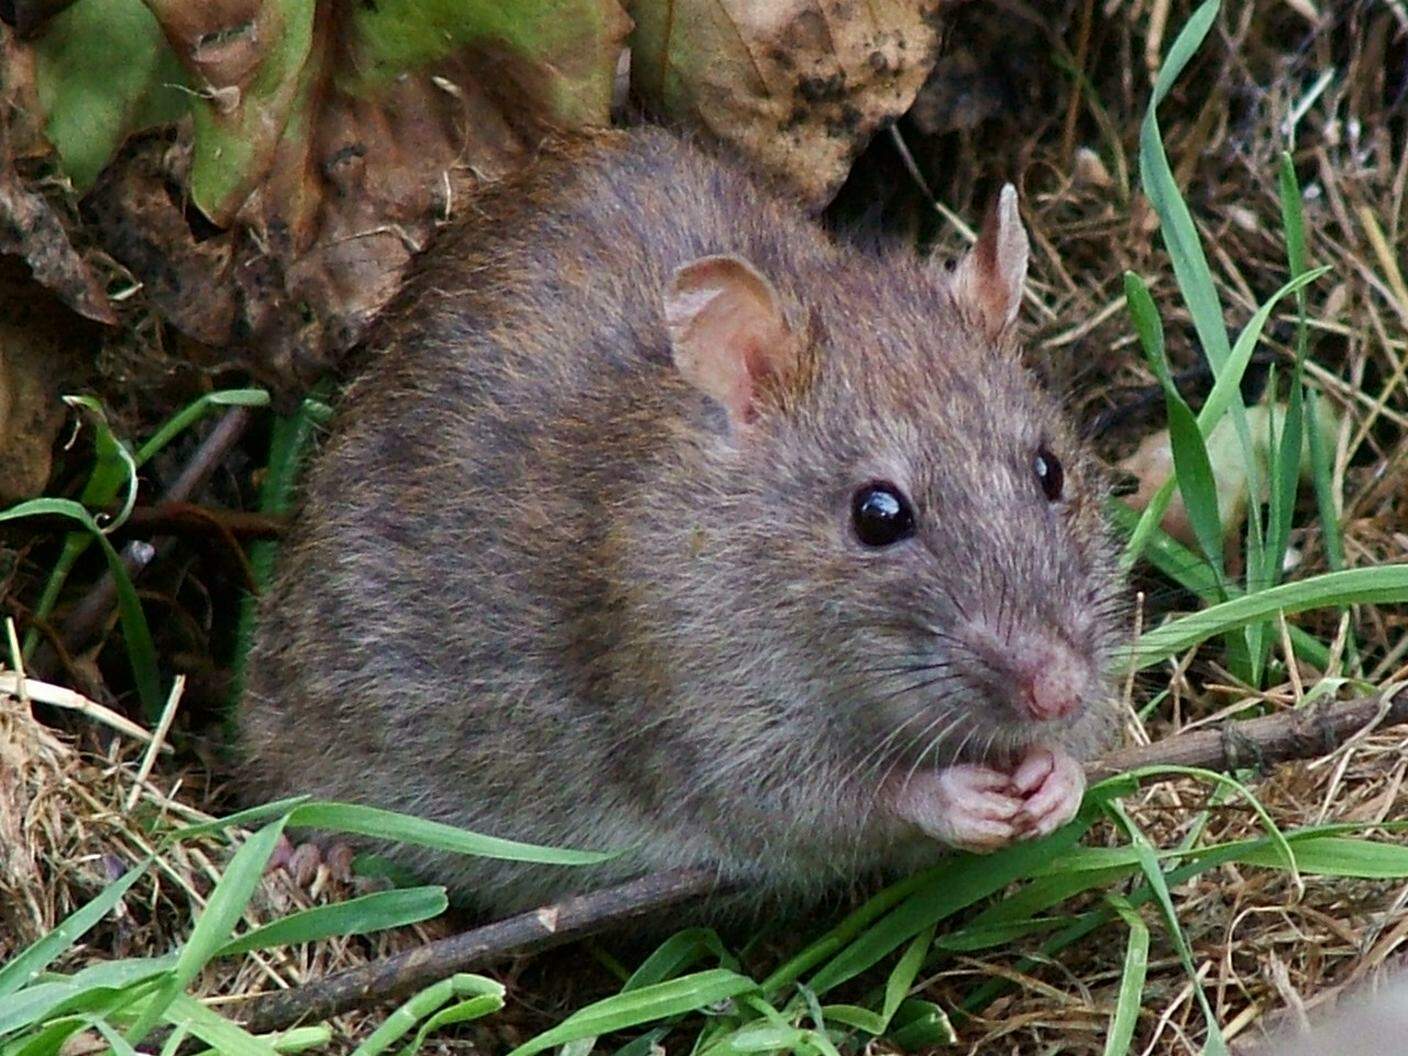 Il "Rattus norvegicus" è la specie più diffusa nei meandri dell'impianto fognario della città